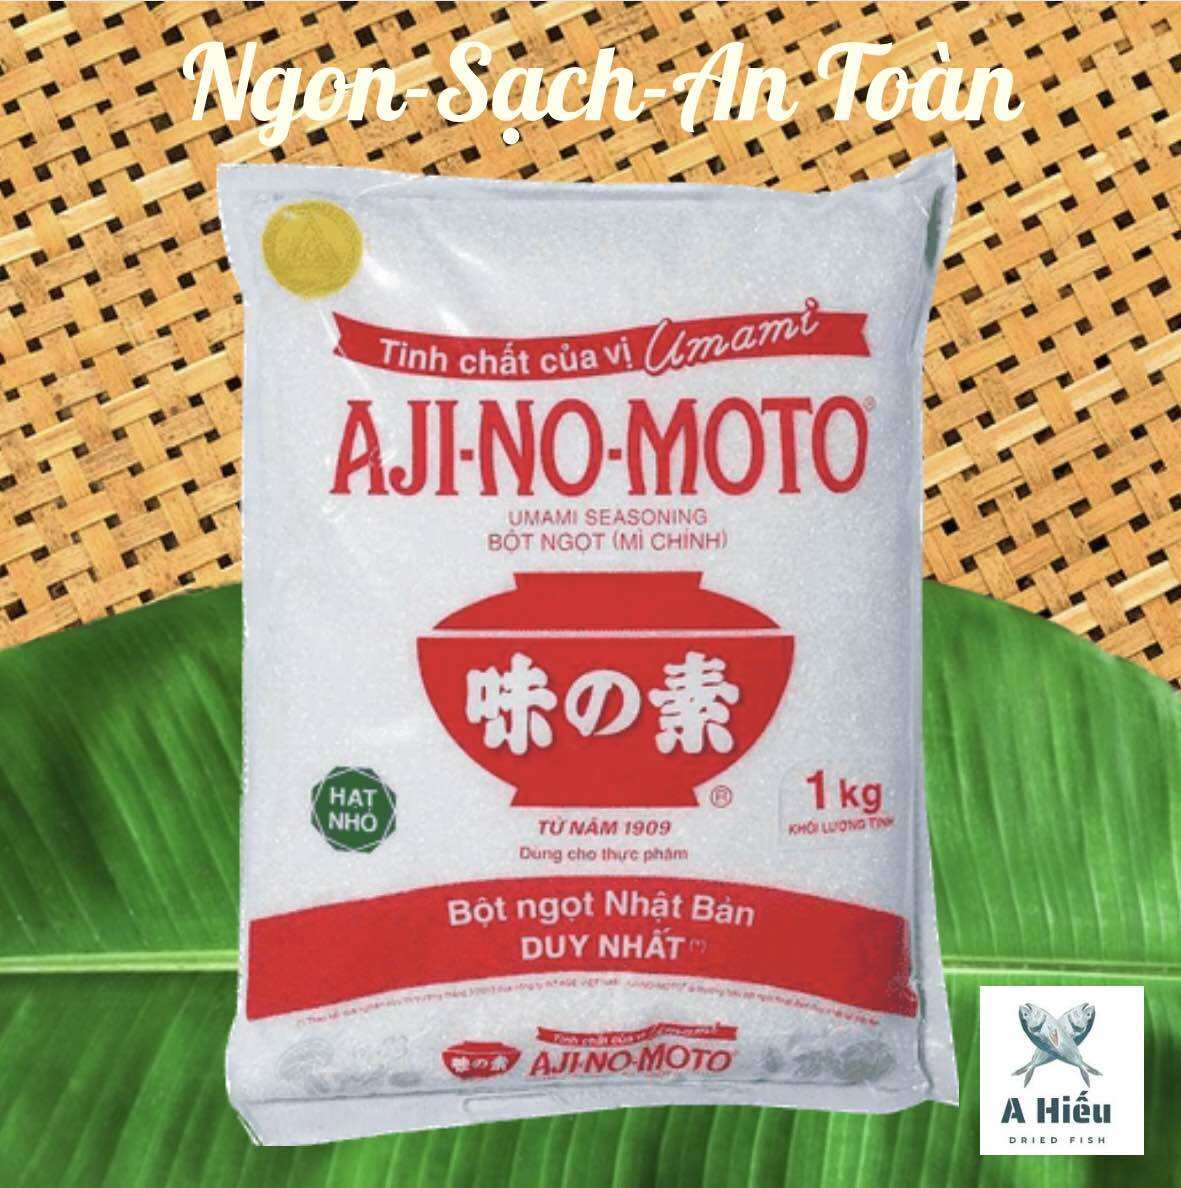 Bột Ngọt Ajinomoto Nhật bản mì chính 1kg